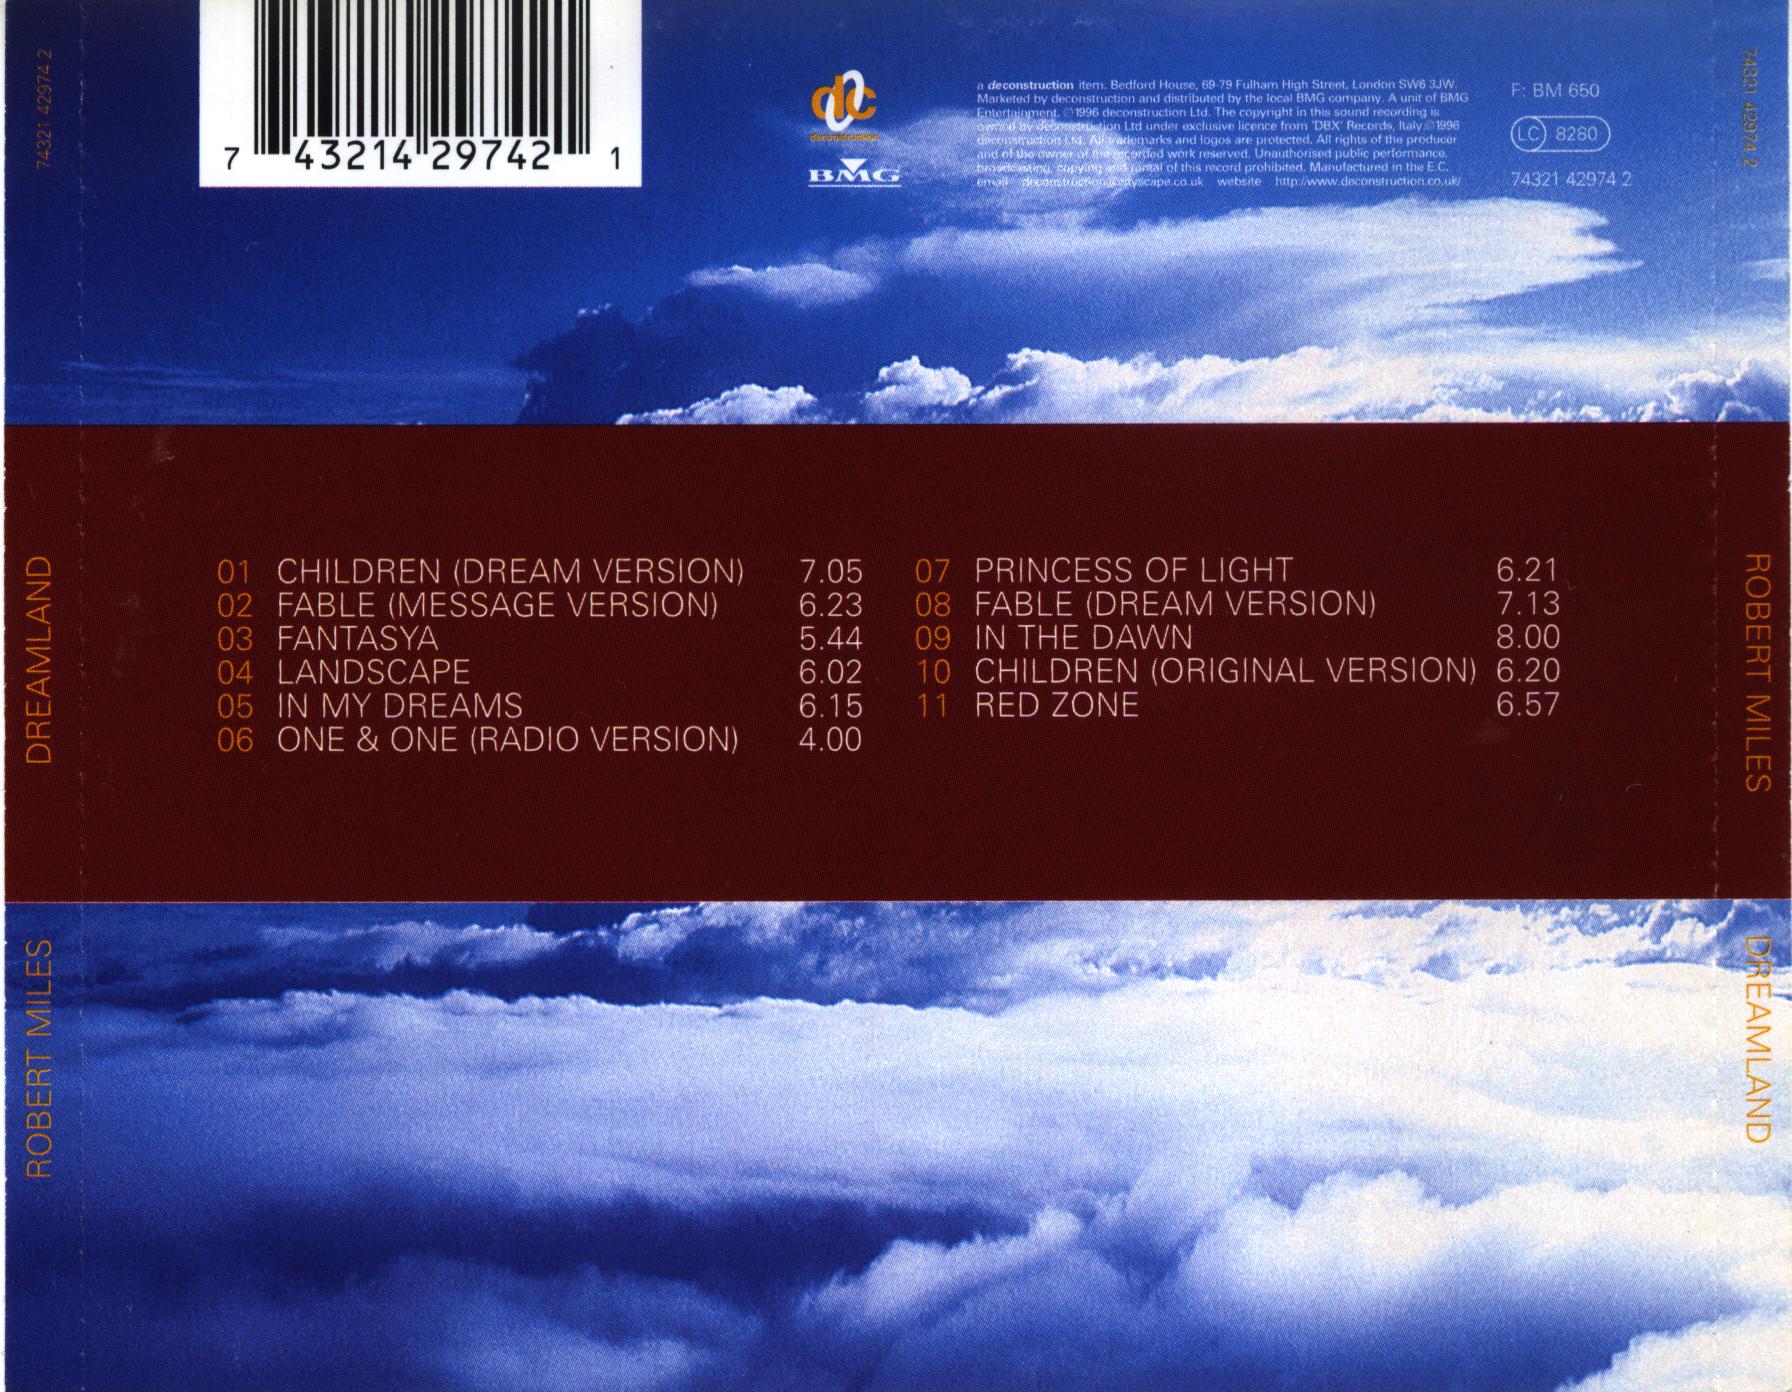 Robert miles dreaming. Robert Miles Dreamland 1996 обложка. Robert Miles - Dreamland (1996) компакт диск. Robert Miles Dreamland обложка CD.